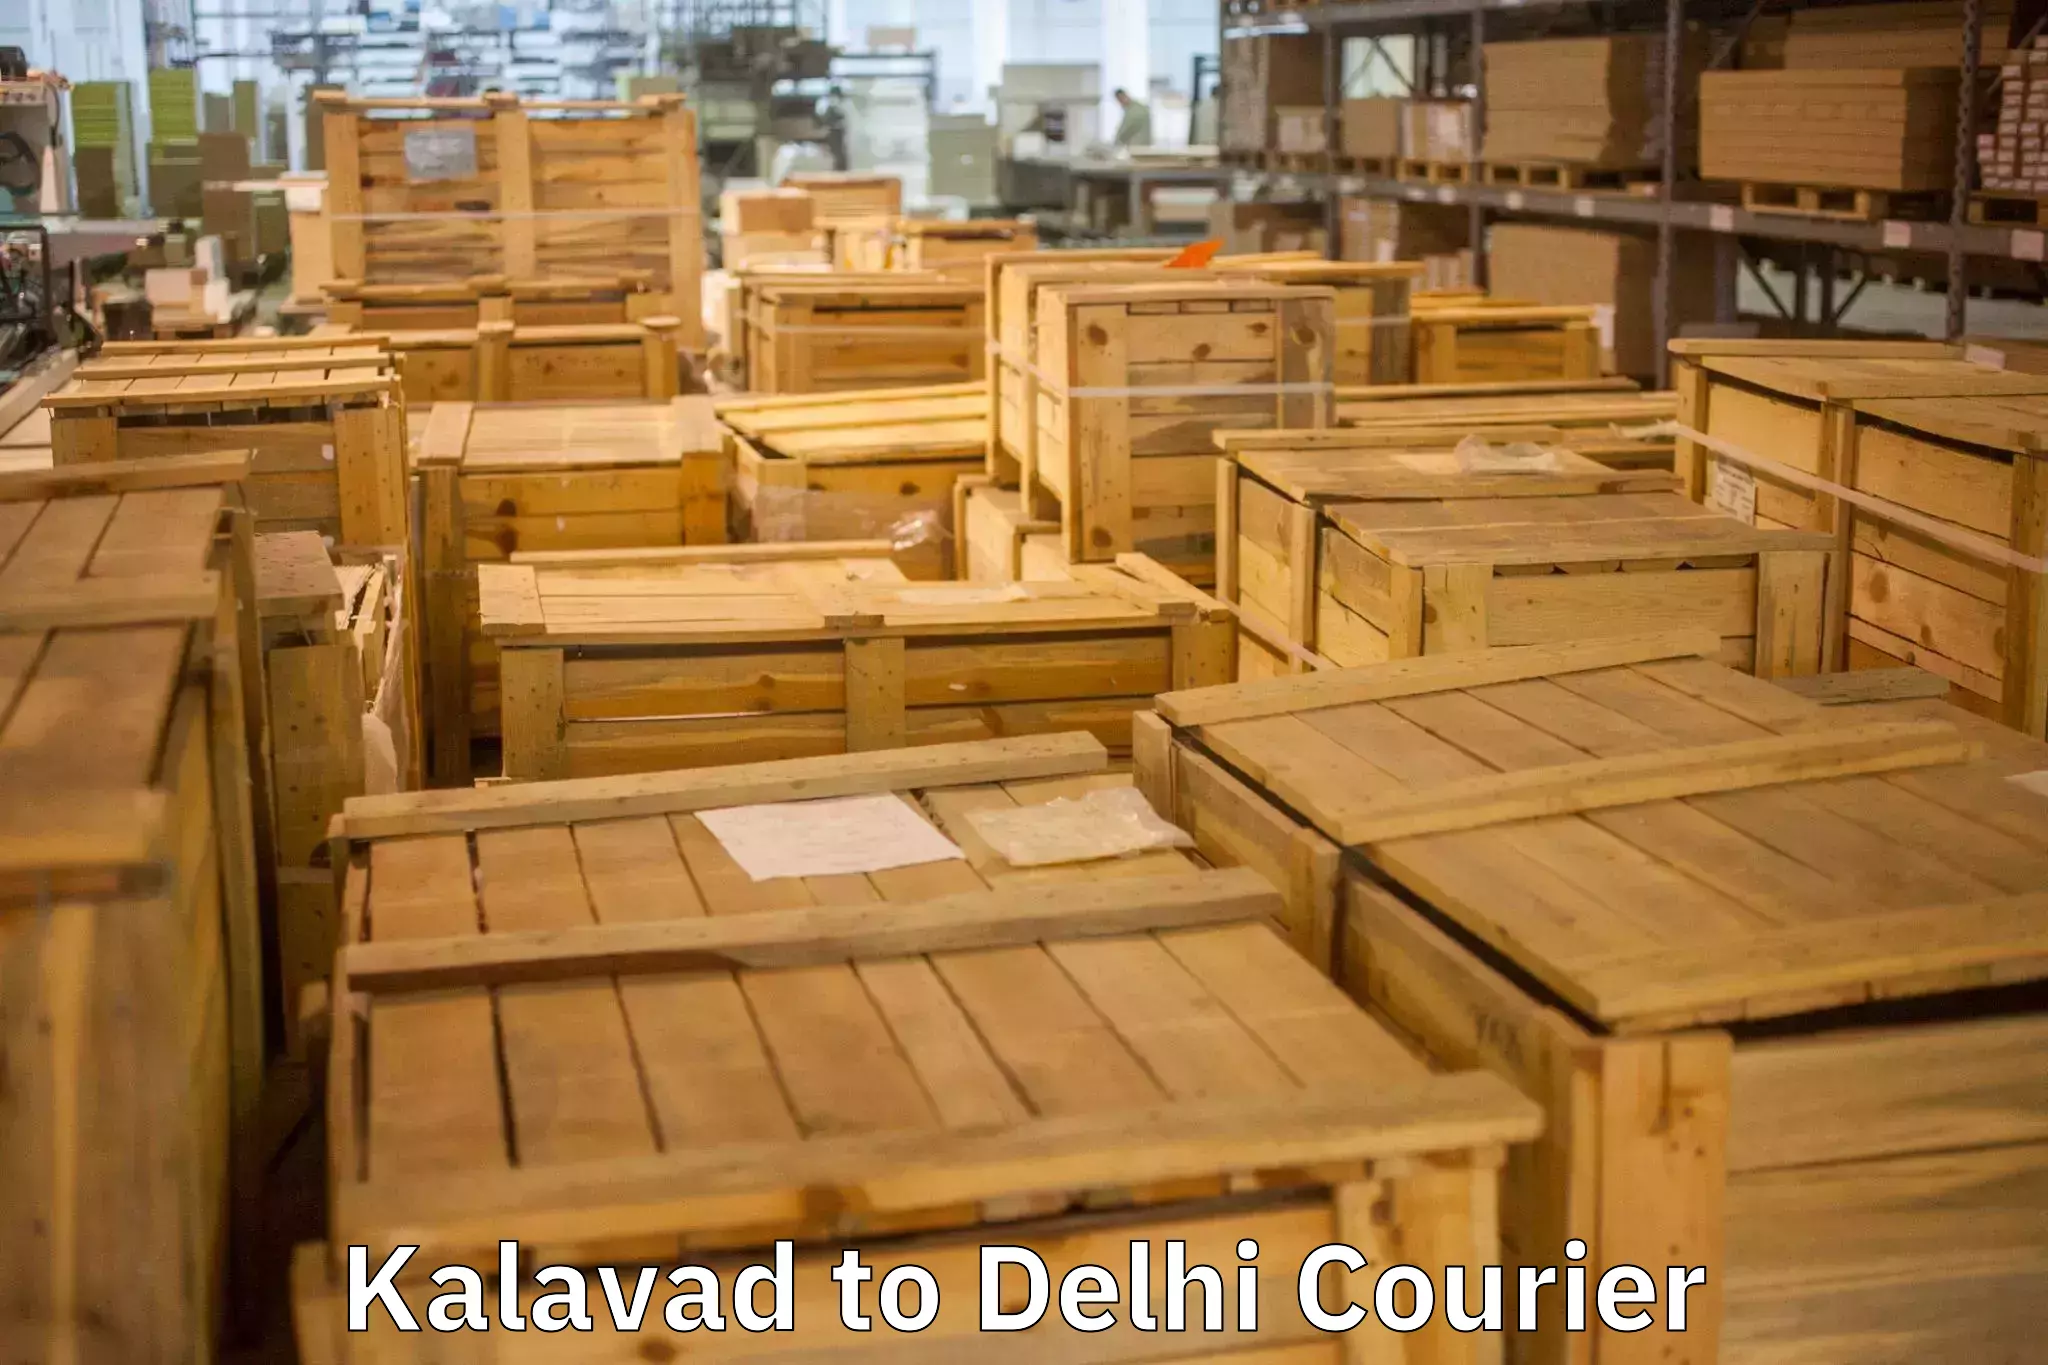 Moving and packing experts Kalavad to Ashok Vihar